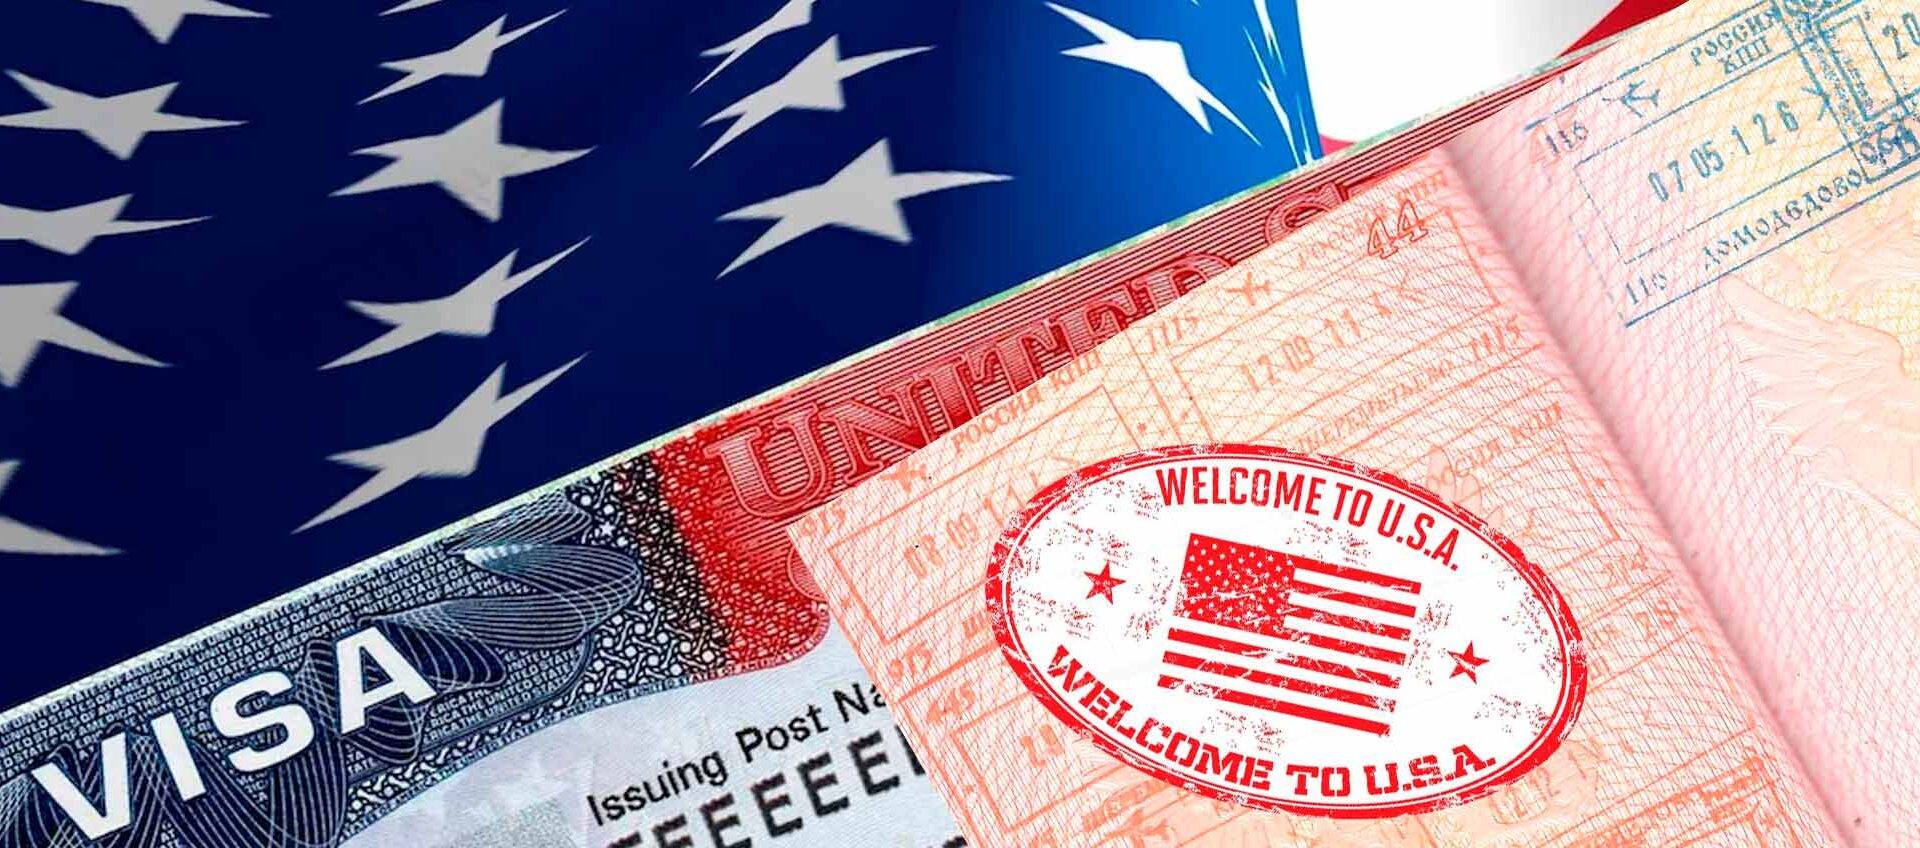 Виза в сша | как получить визу в америку, получение визы сша в 2021 году